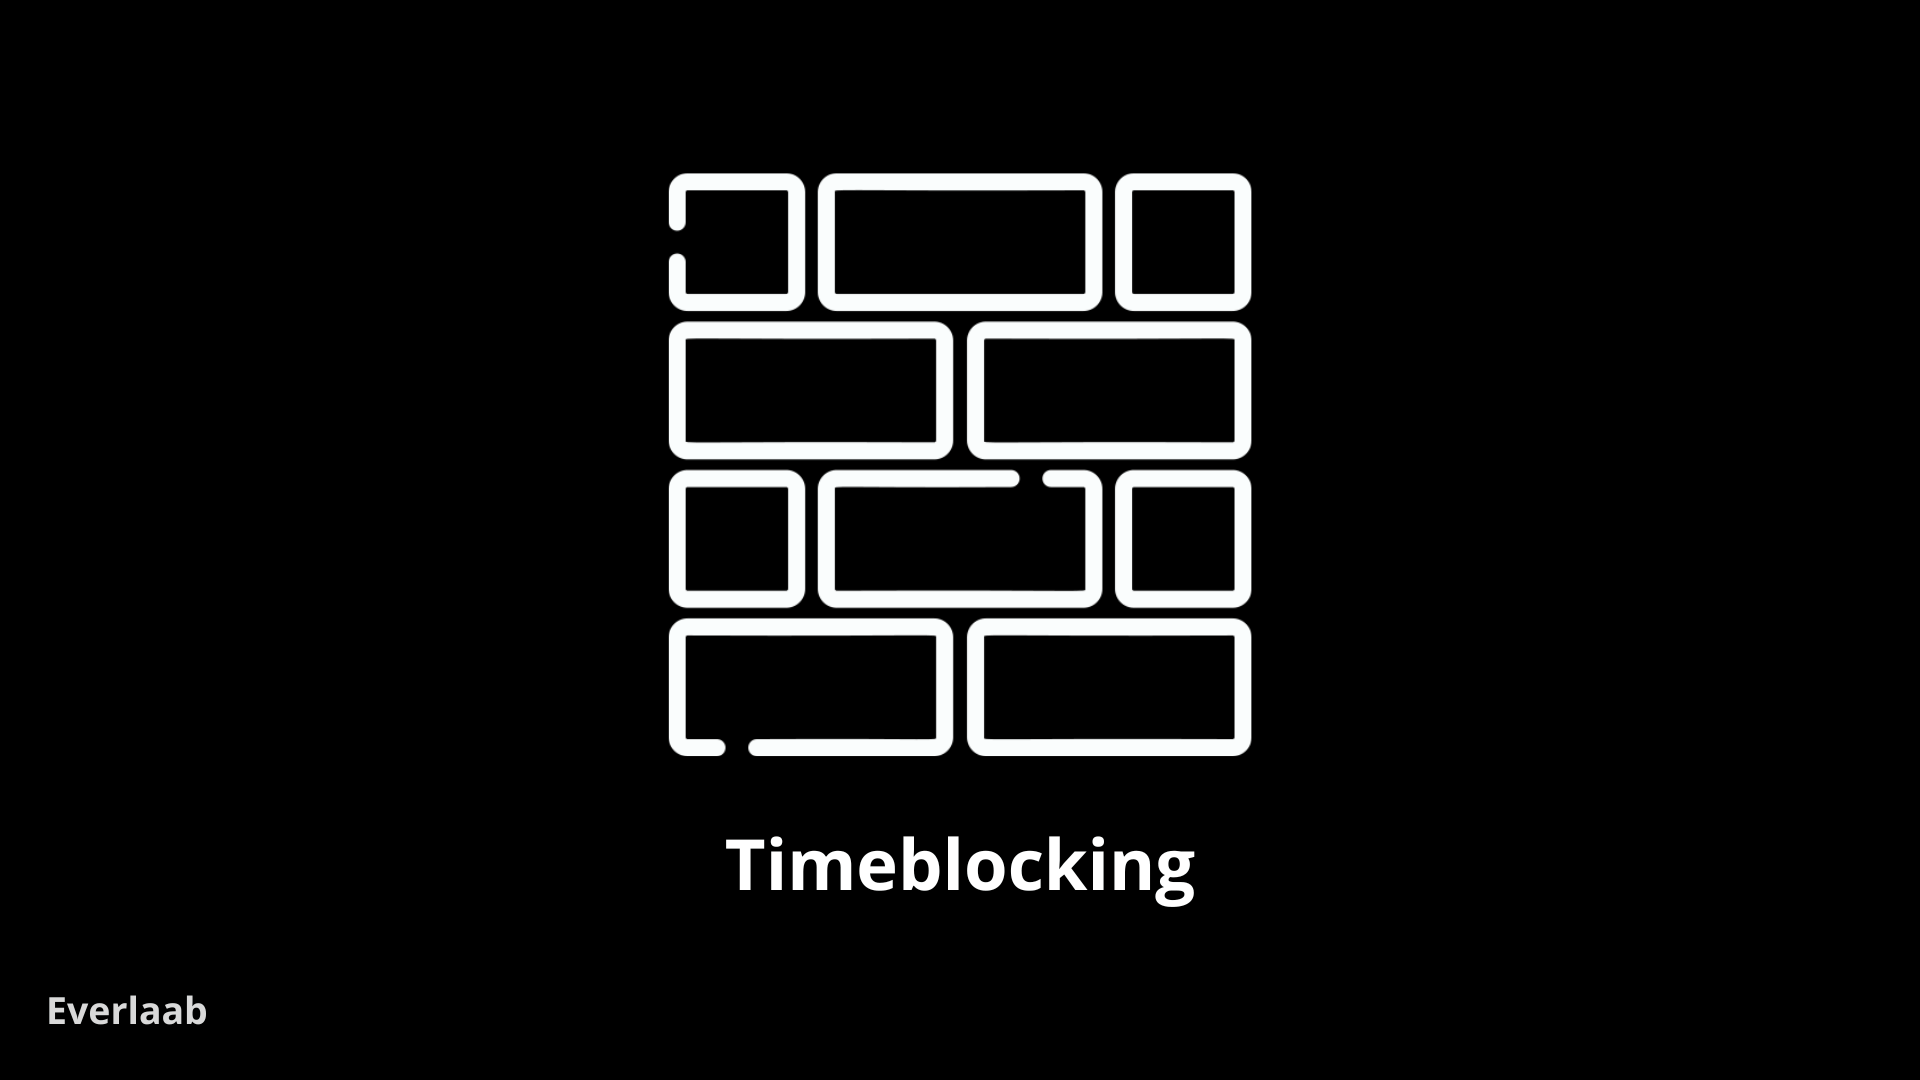 gérer son temps avec le timeblocking